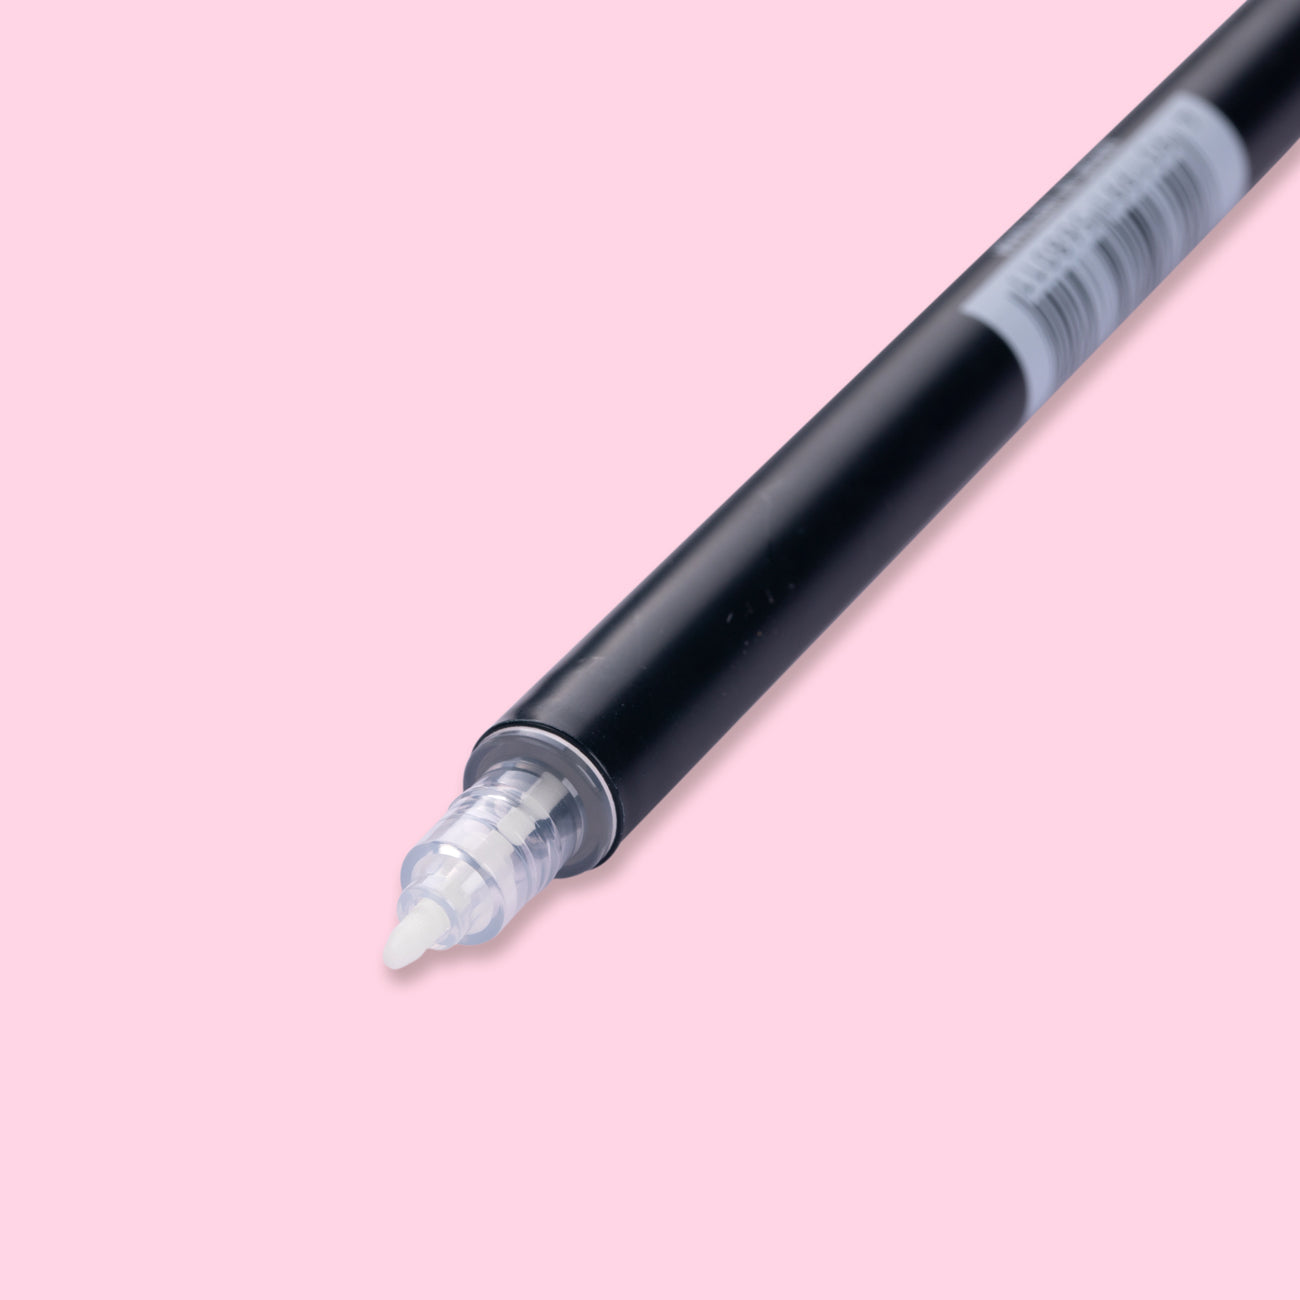 Tombow ABT Dual Brush Pen N00 blender